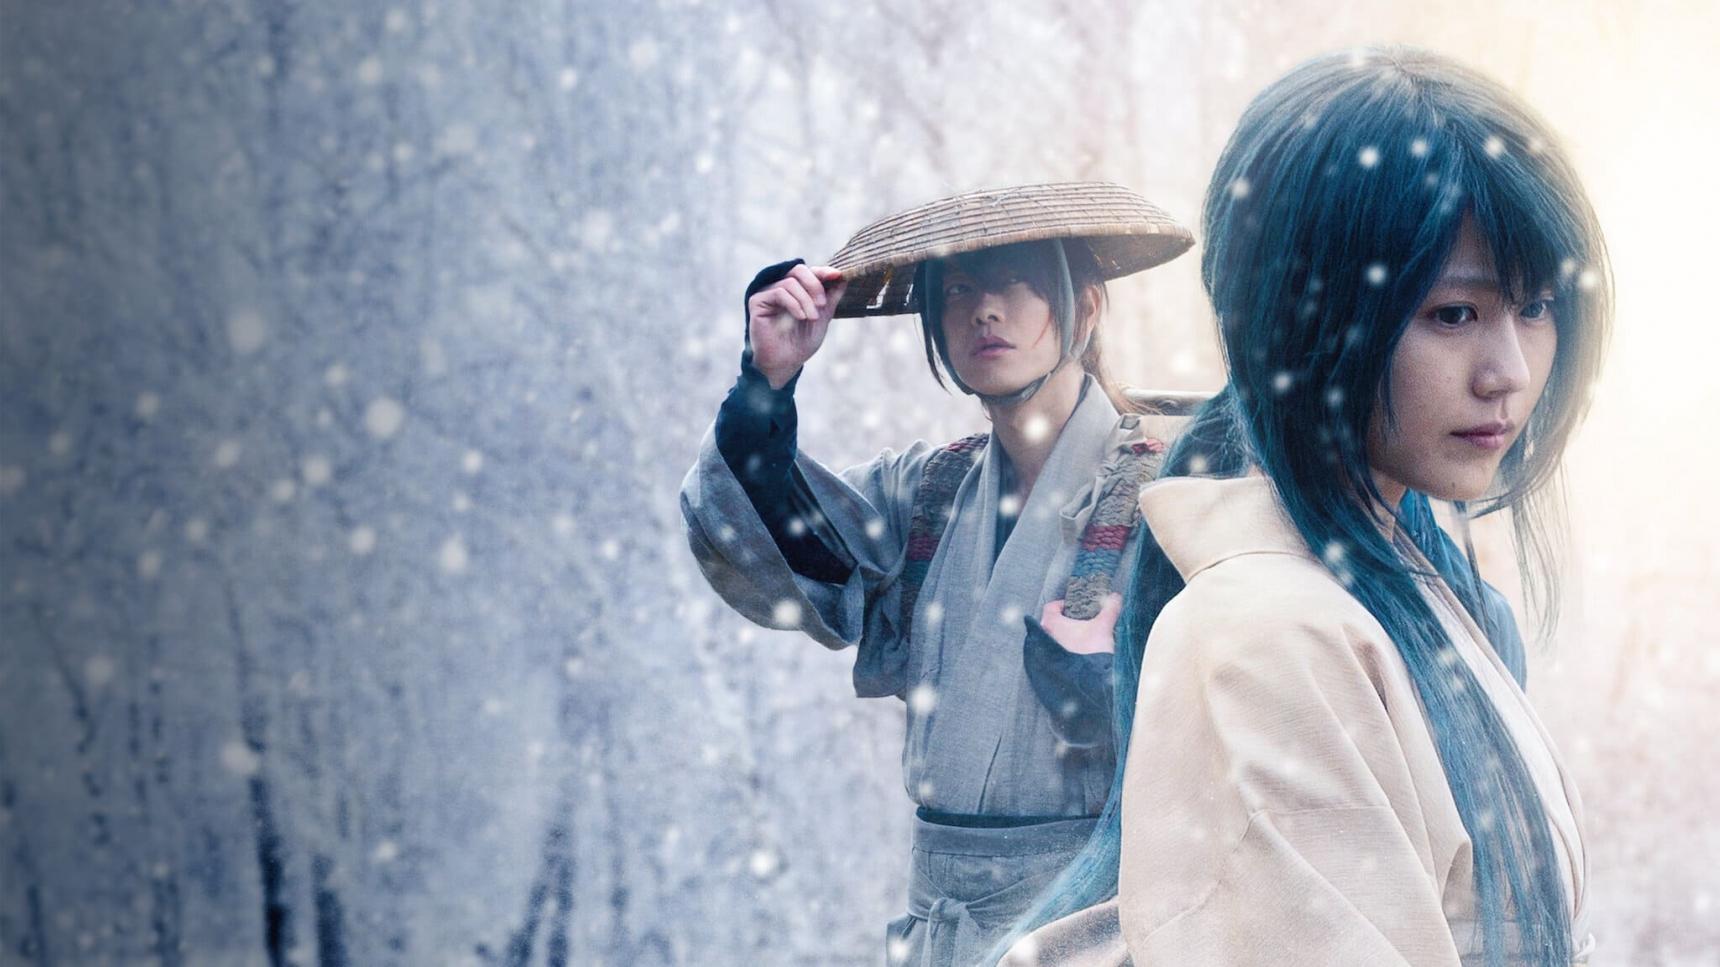 sinopsis Kenshin, el guerrero samurái: El origen